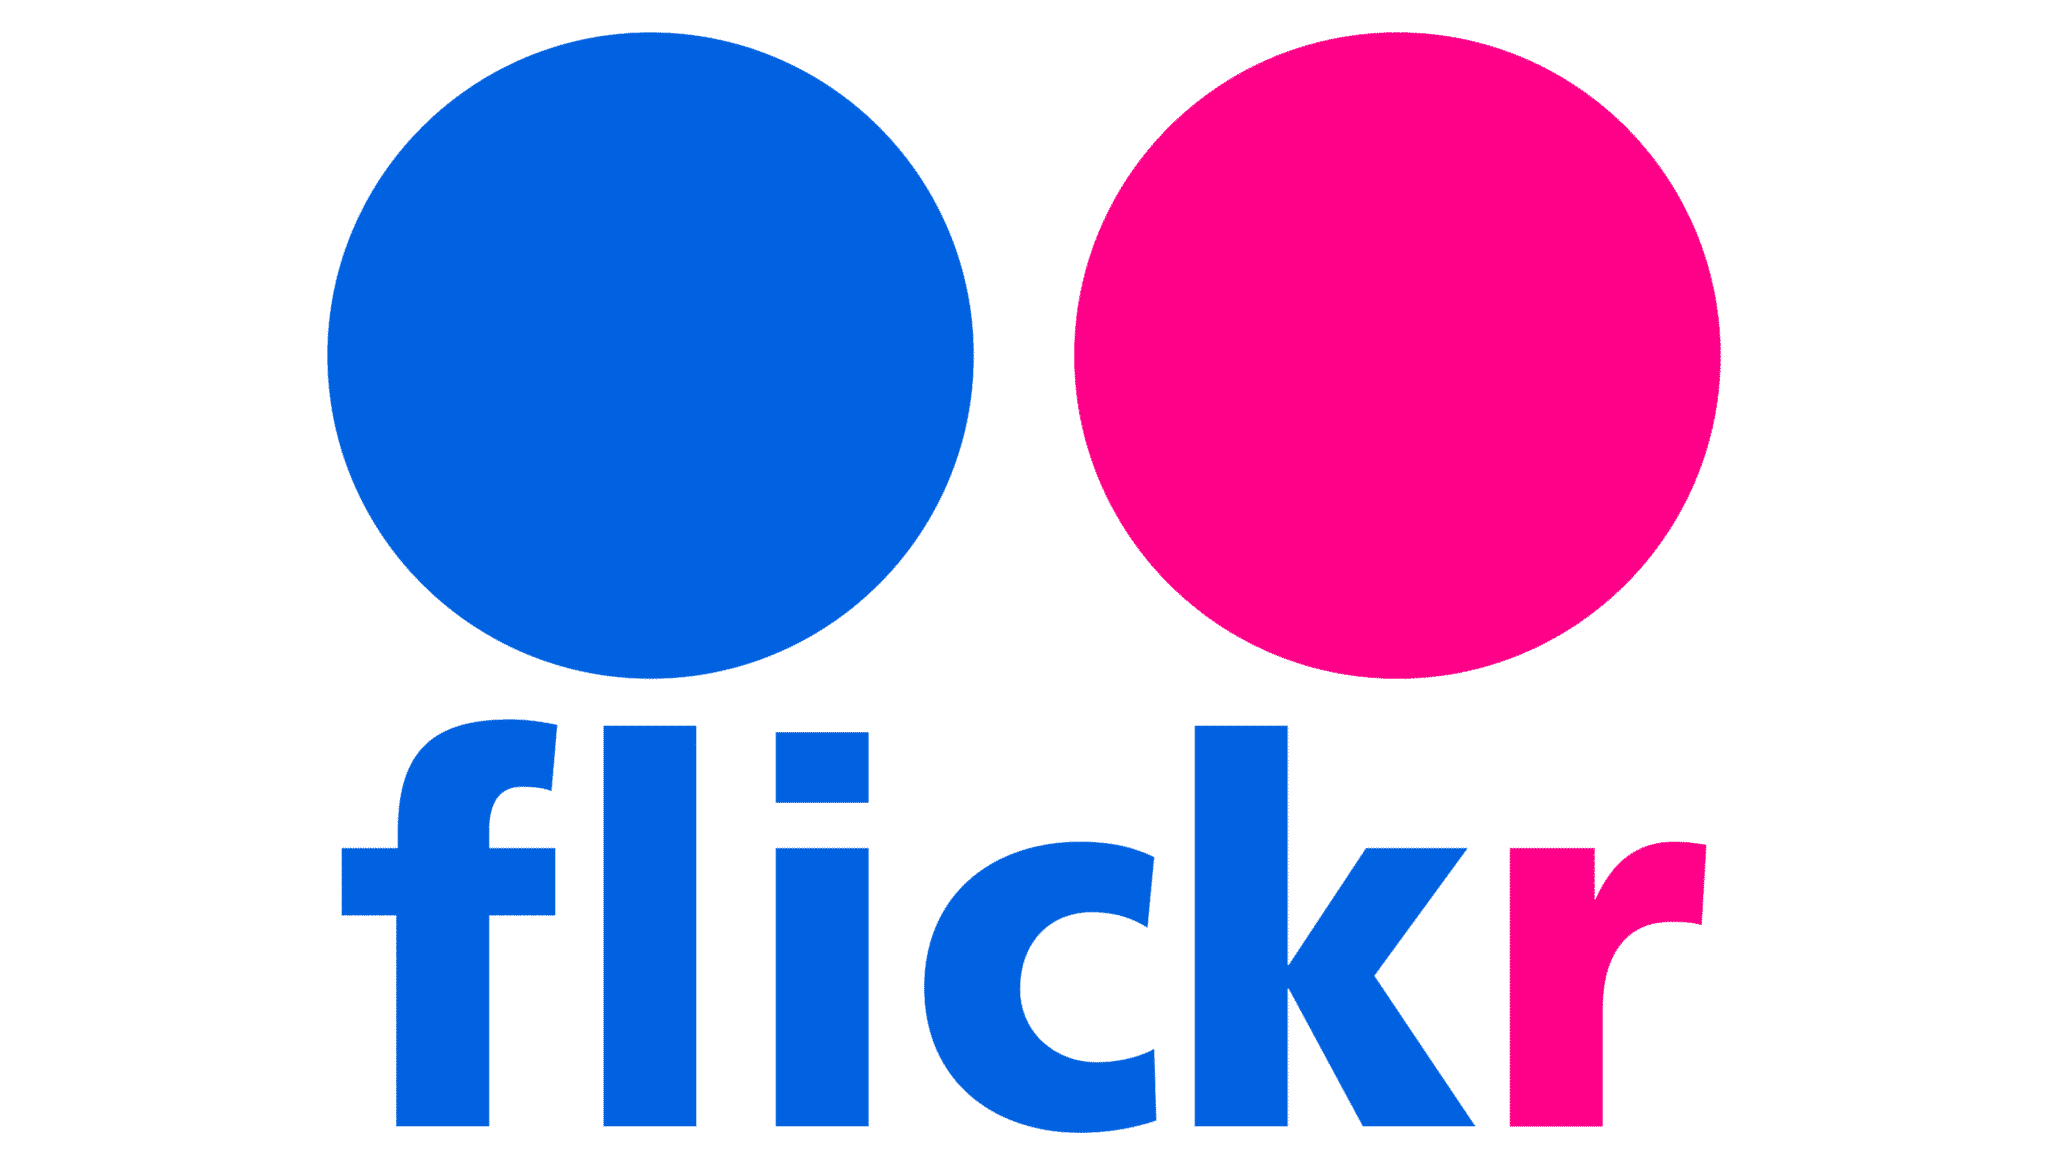 Flickr | Best Facebook Alternatives in 2021